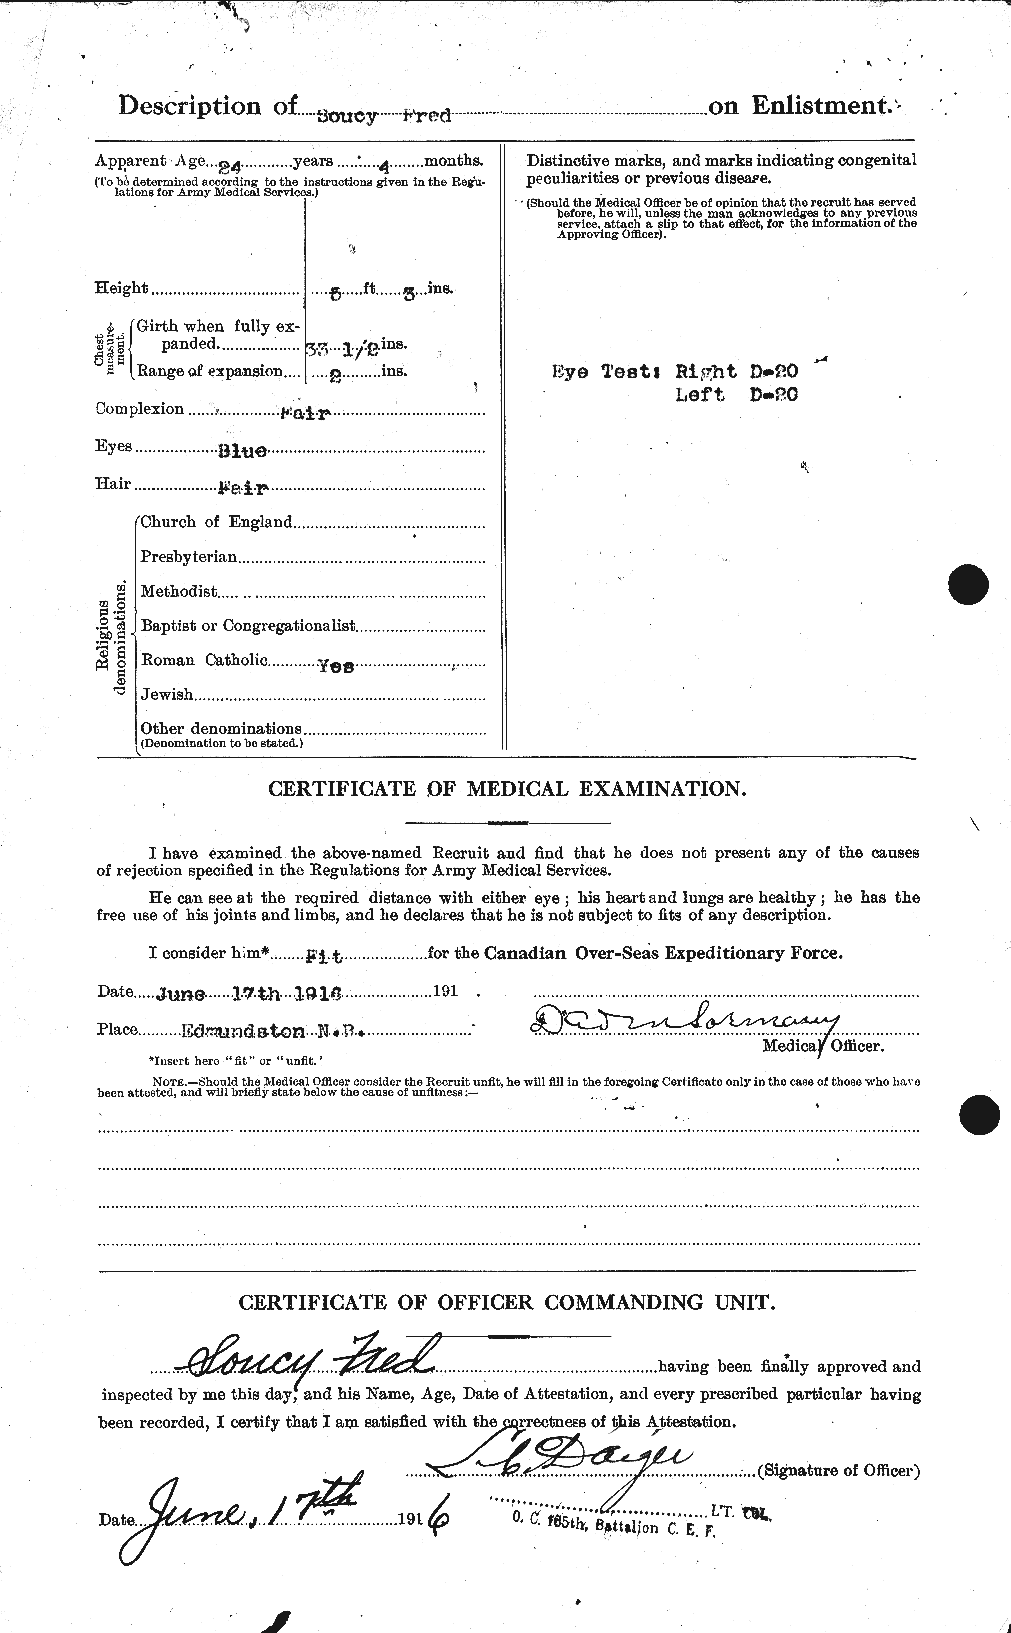 Dossiers du Personnel de la Première Guerre mondiale - CEC 109566b